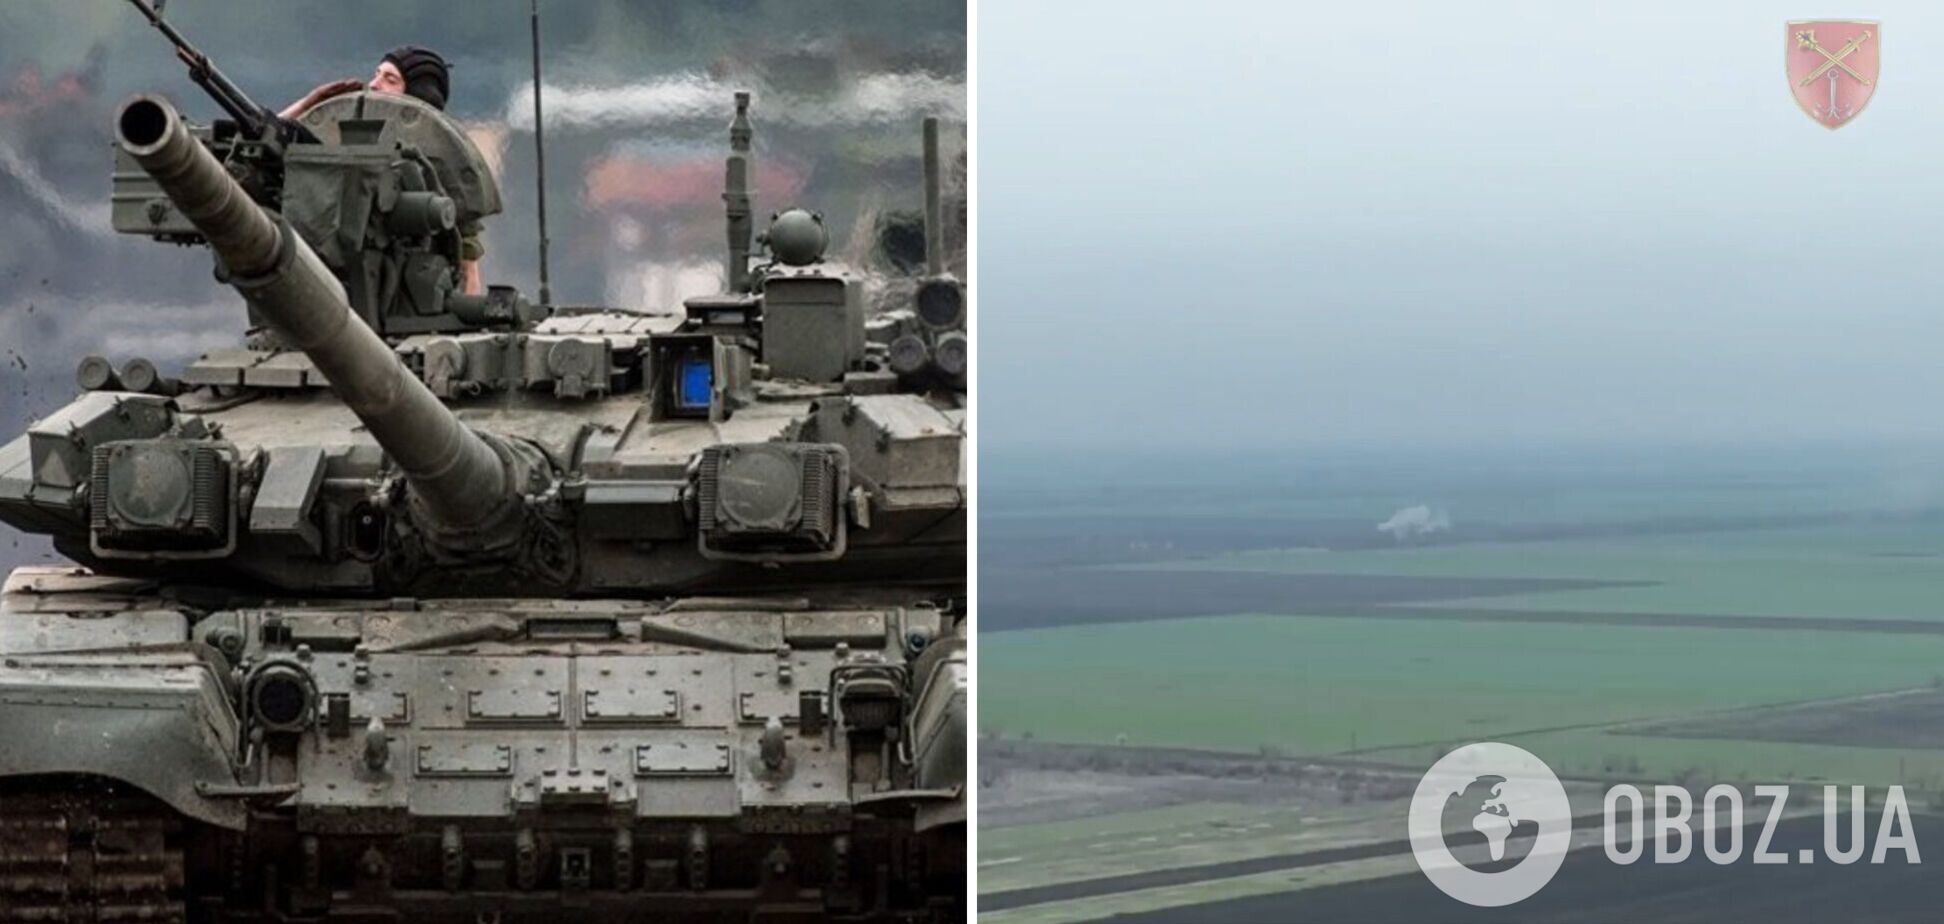 'Утро начинается с 'горячего привета': на Николаевщине ВСУ уничтожили вражеский танк. Видео